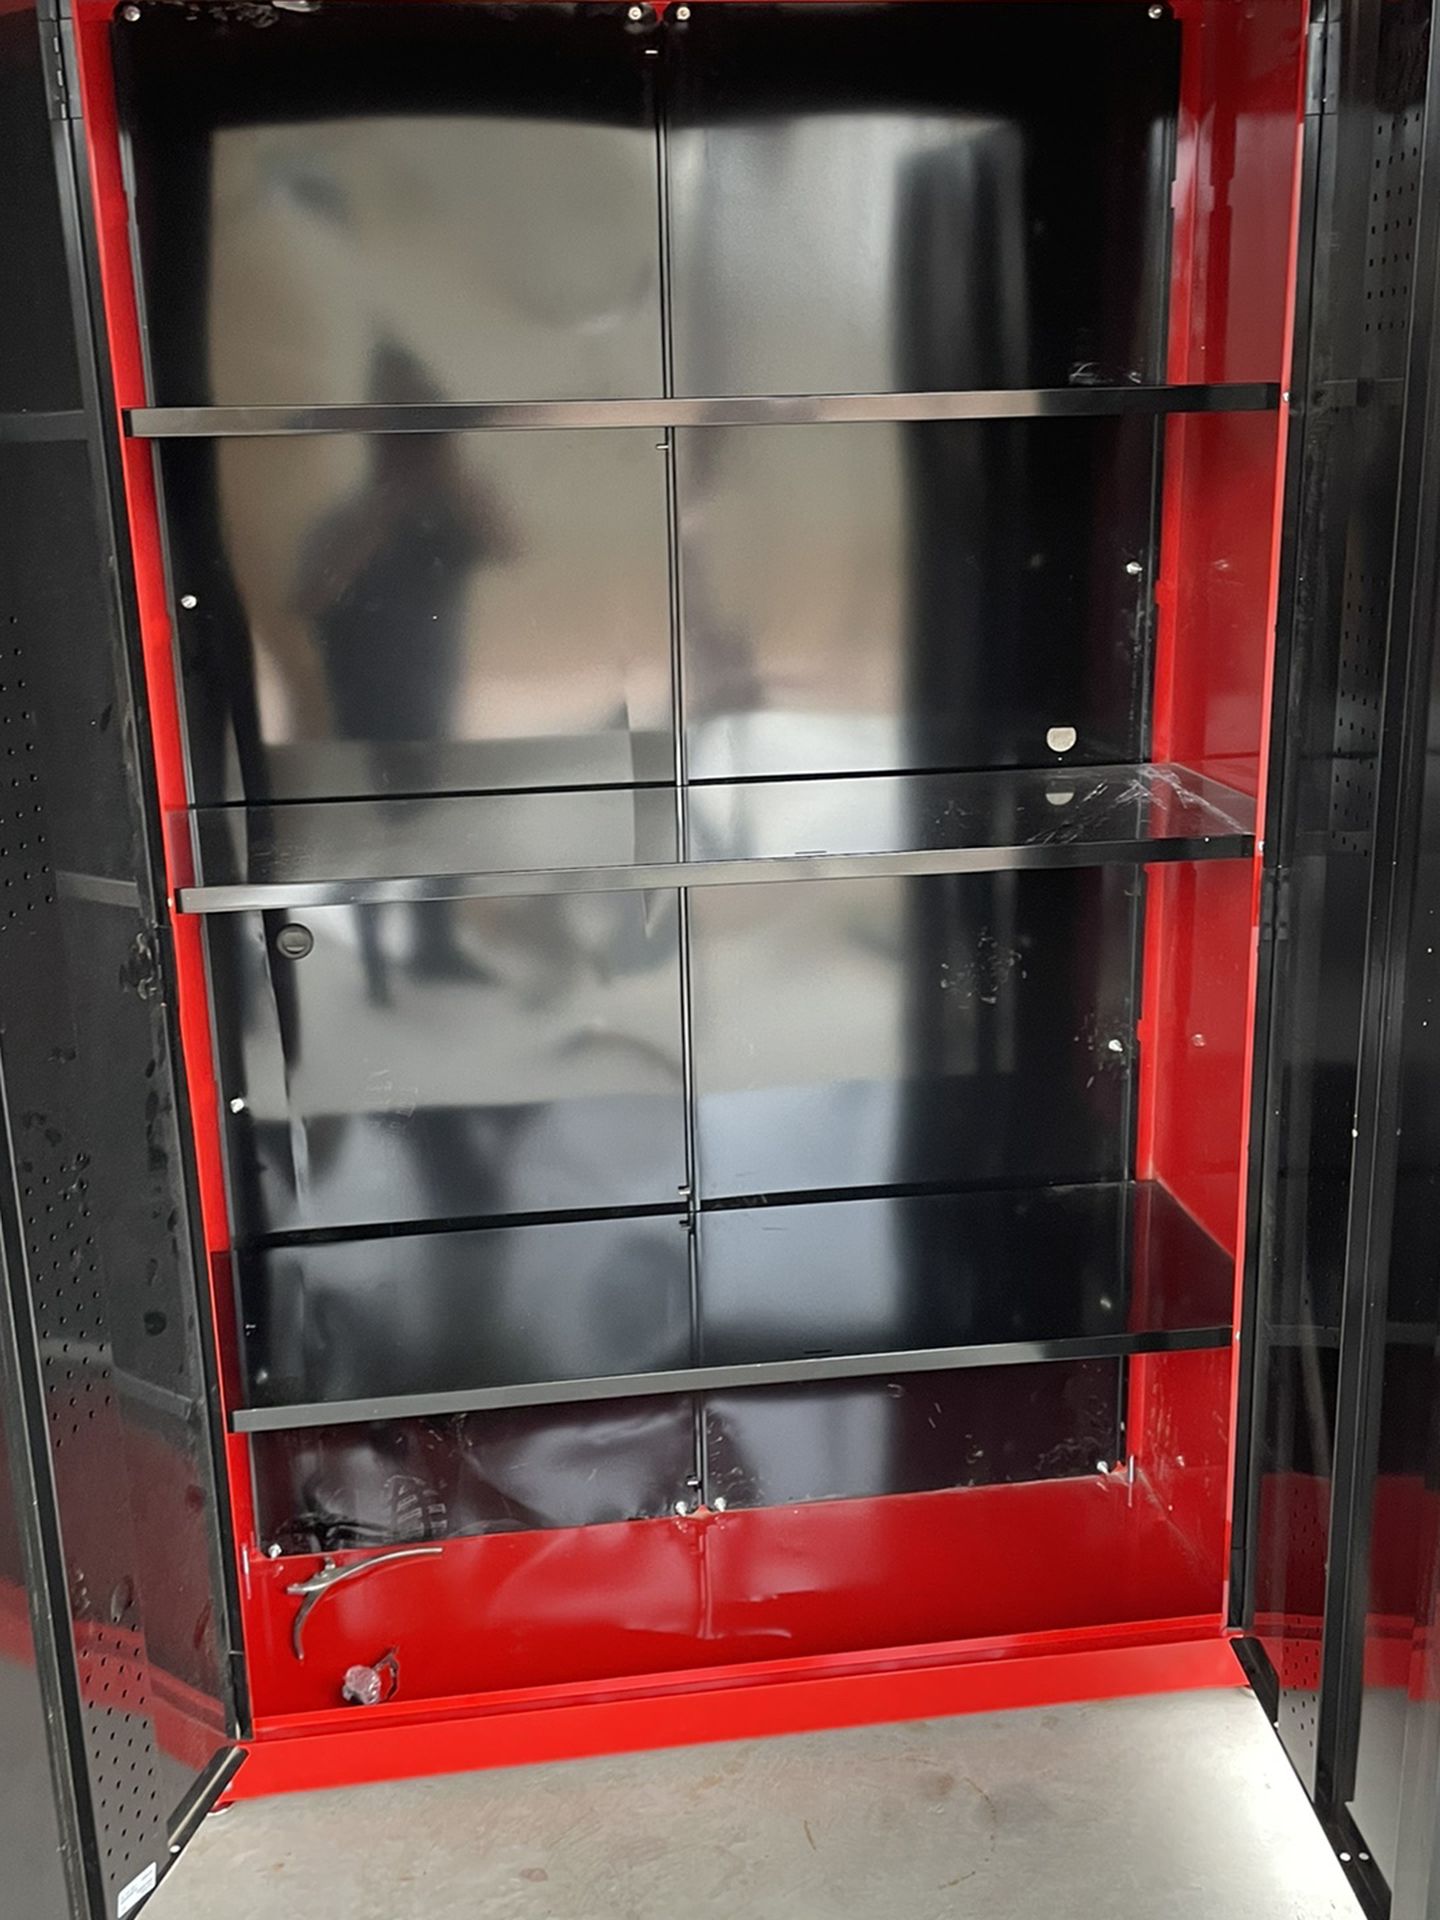 freestanding storage cabinet